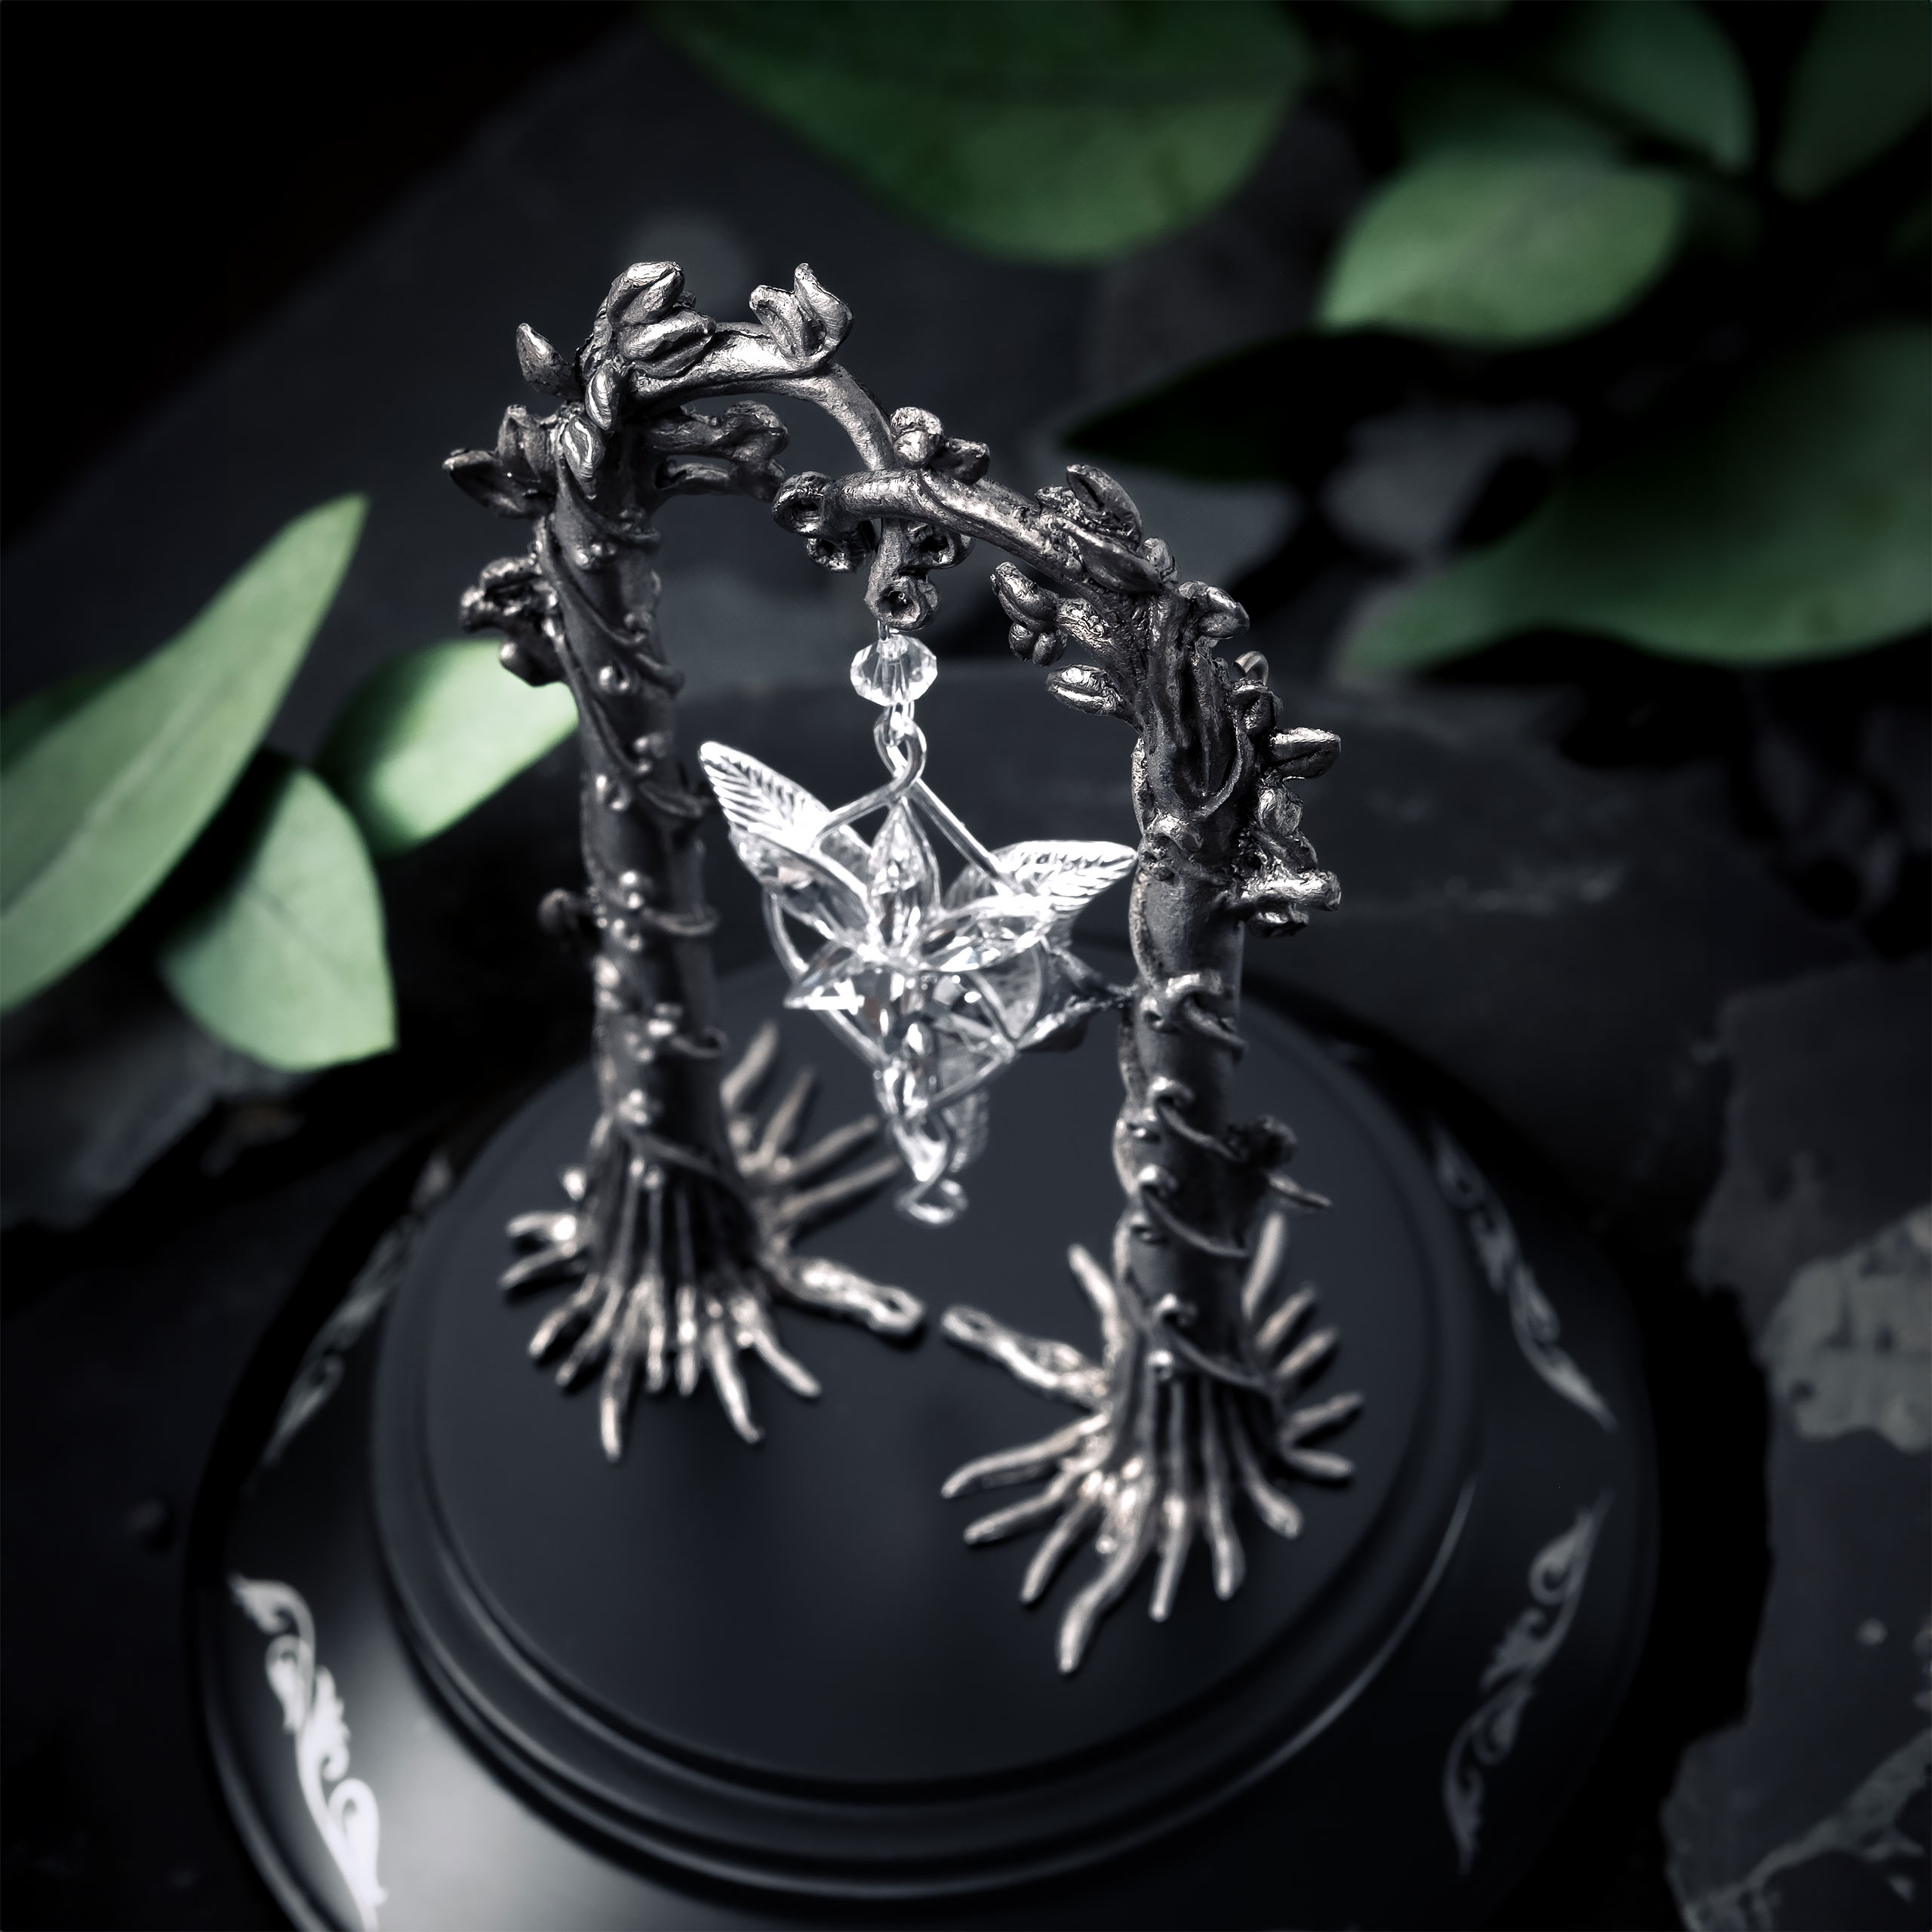 Evenstar Jewelry Showcase with Arwen's Evenstar